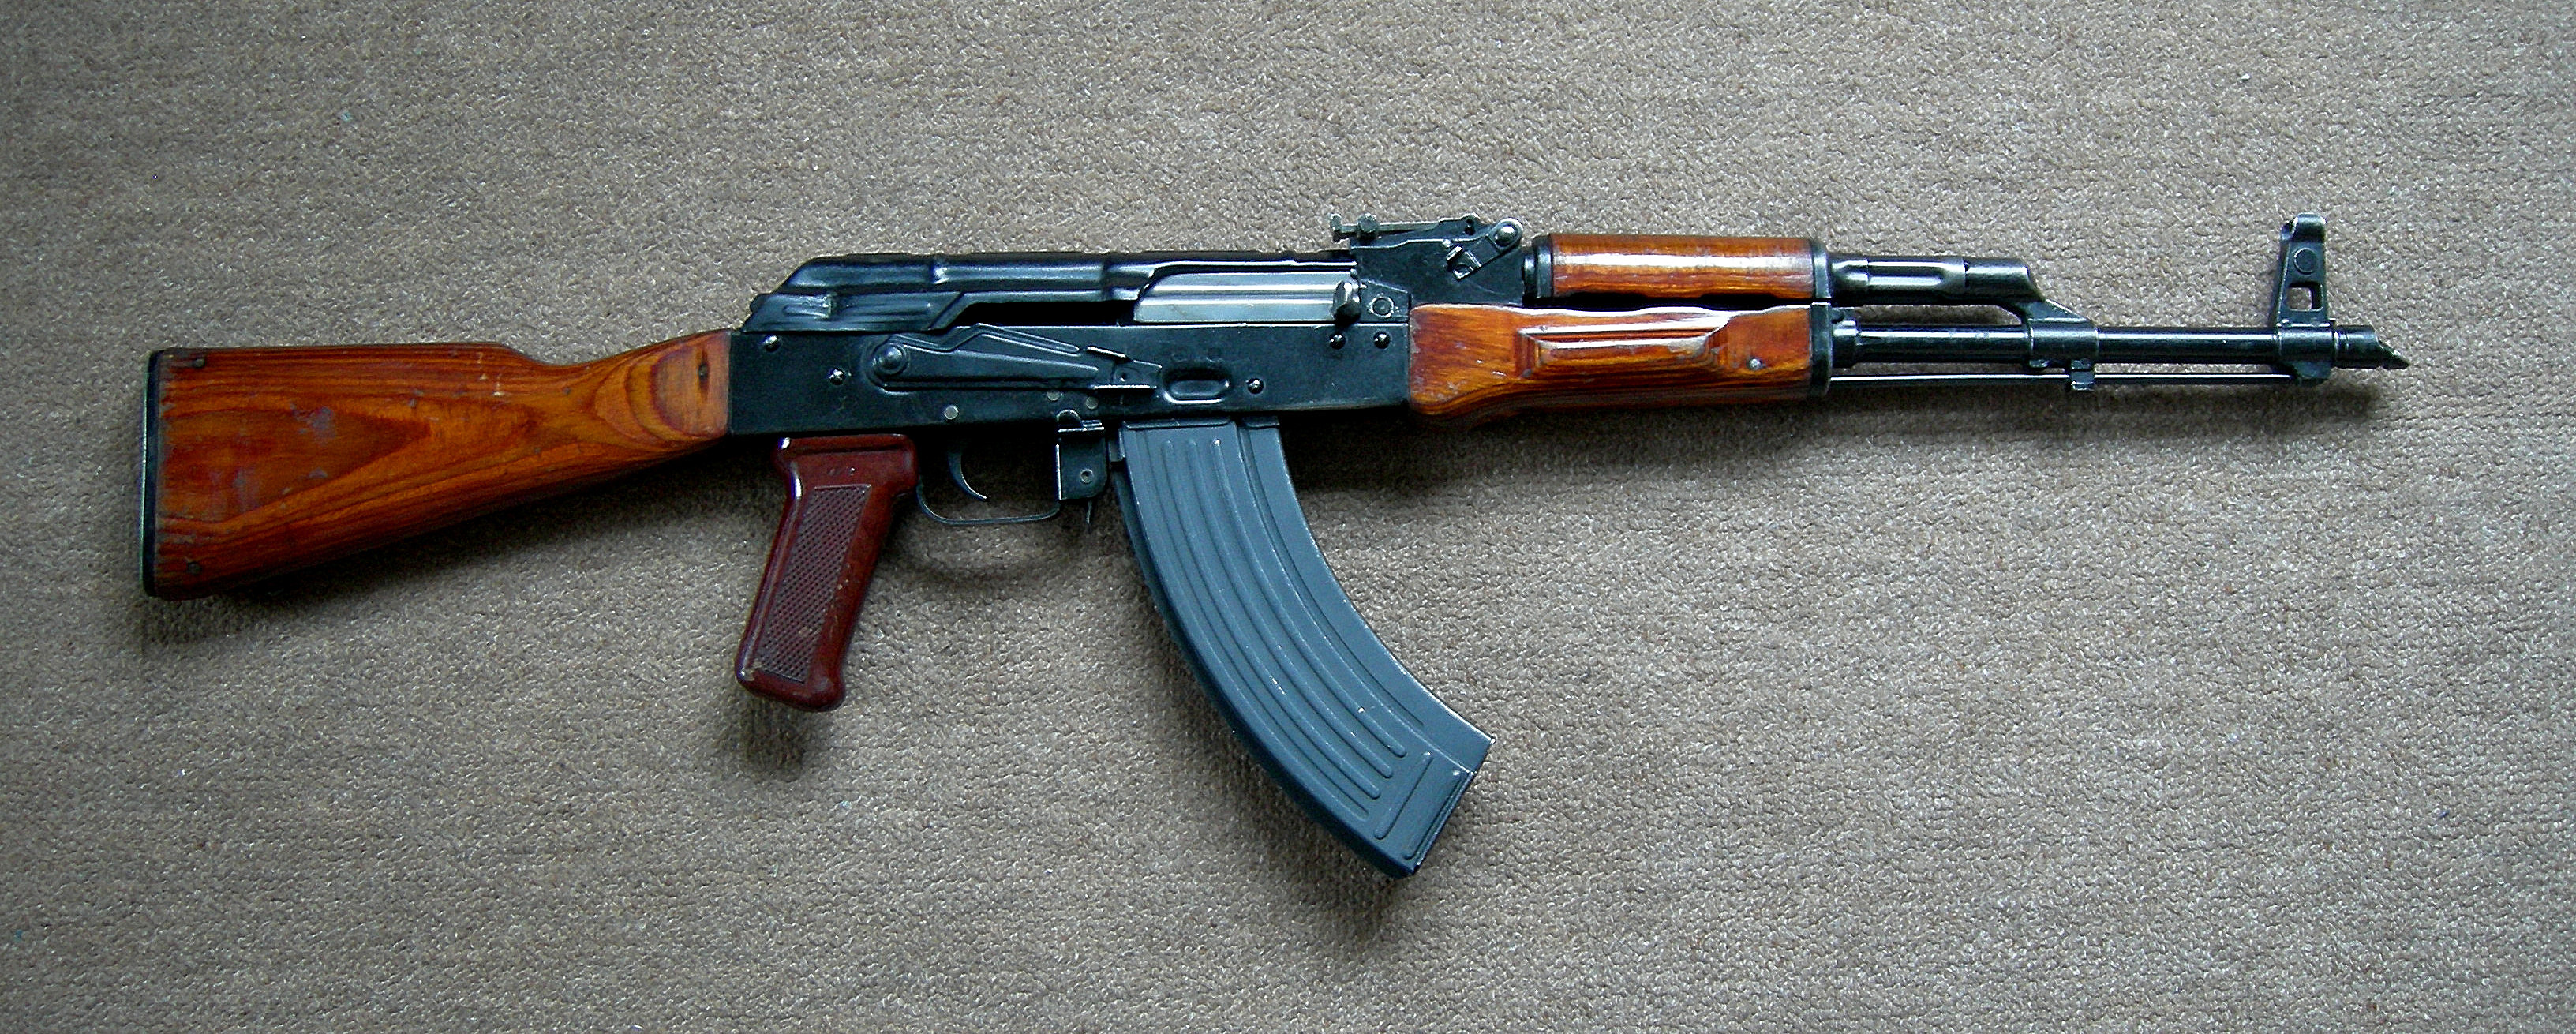 Weapons Akm Assault Rifle 3264x1310